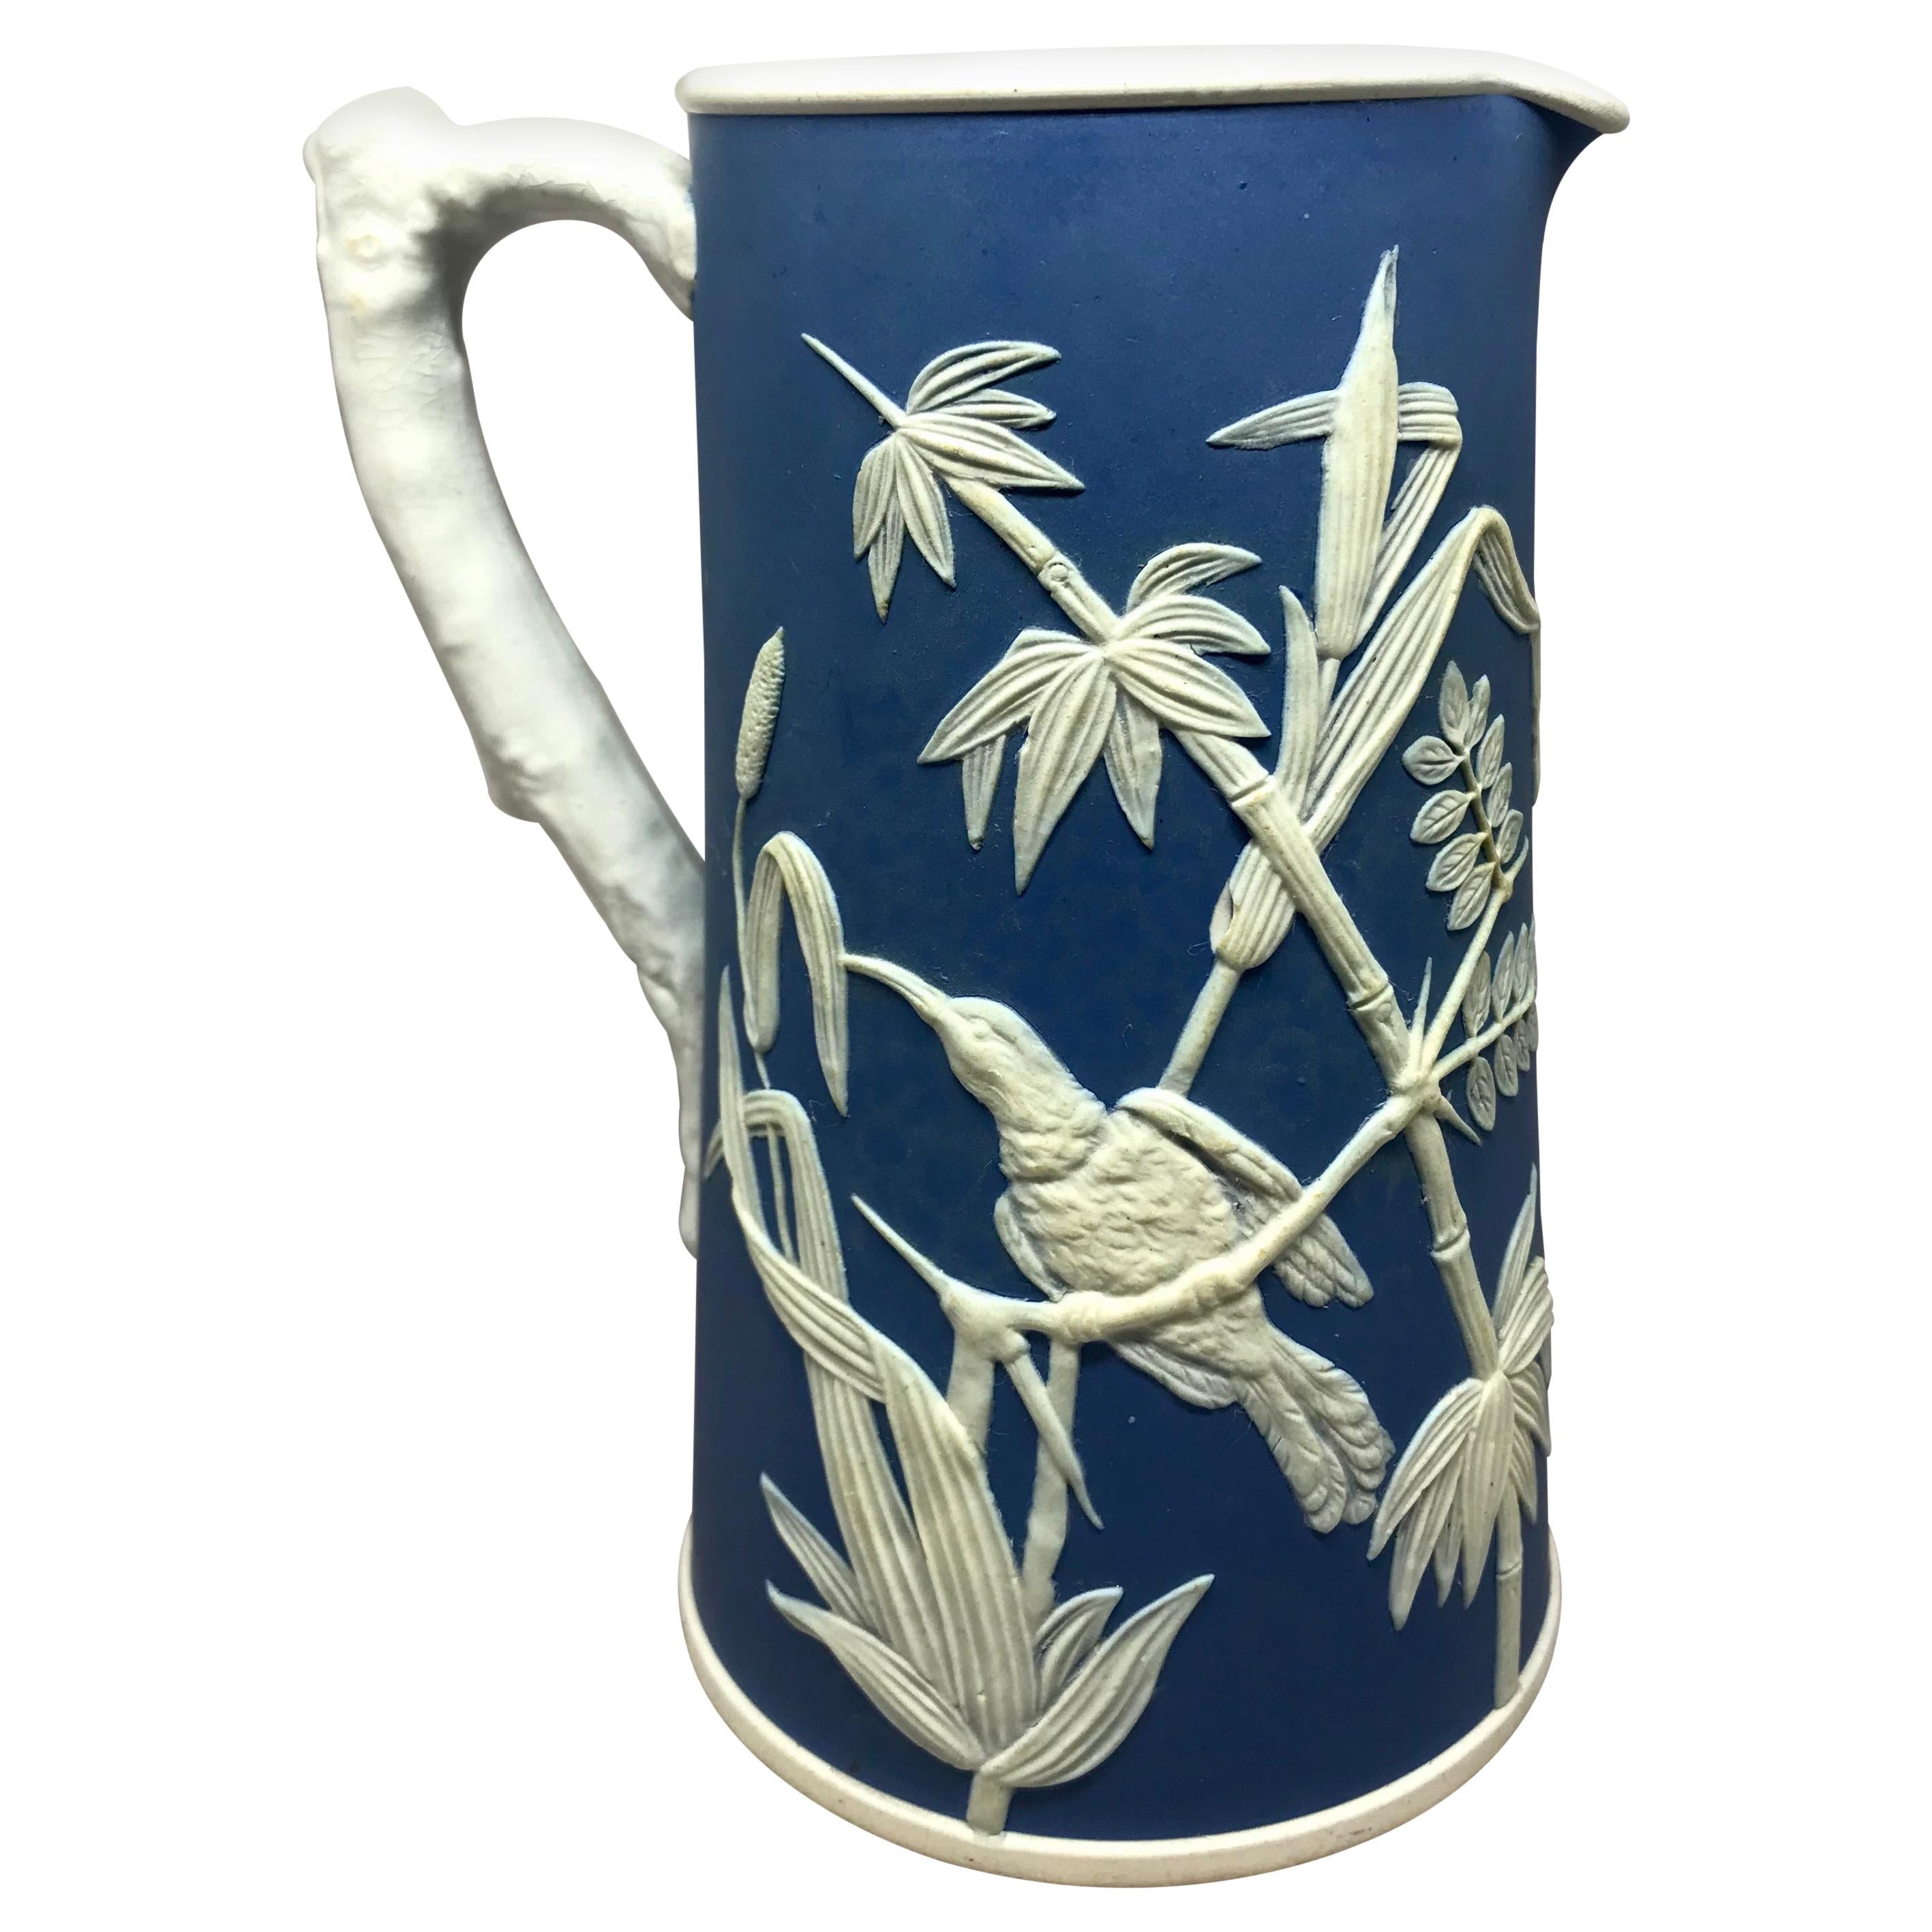 Jarra colibrí de jaspe de Parián. Vibrante jarra pariana vintage azul y blanca con colibríes entre follaje. Inglaterra, hacia 1930
Dimensiones: 4,63